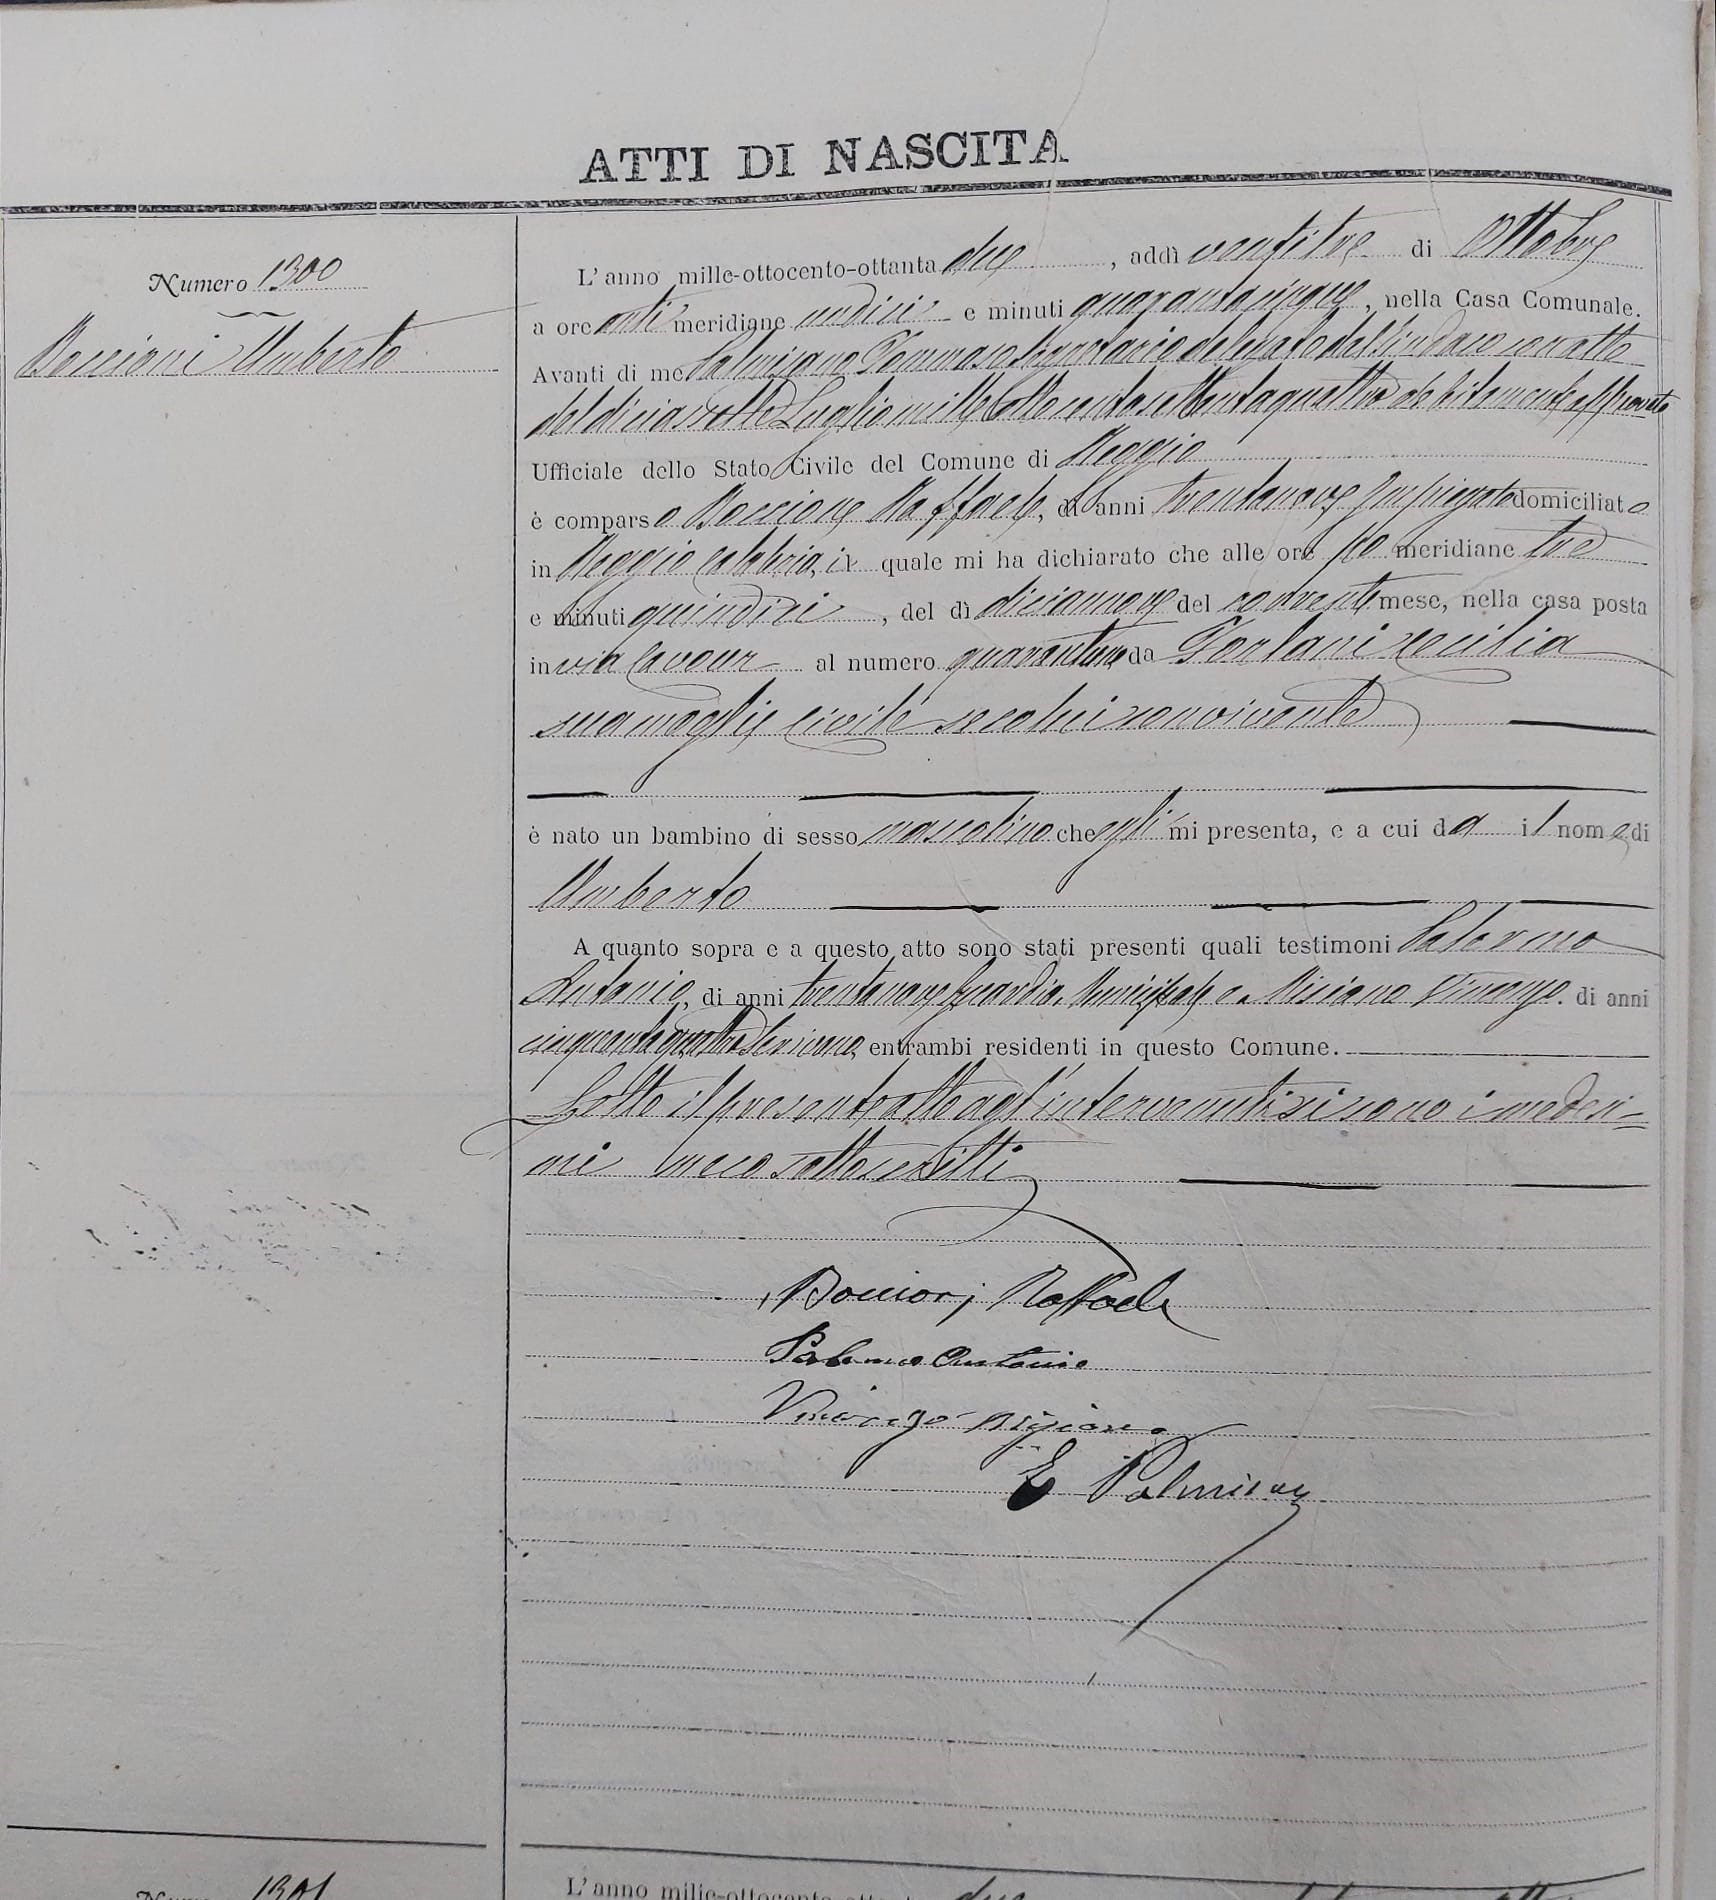 Archivio di Stato di Reggio Calabria, Stato Civile, Nati di Reggio Calabria, Anno 1882, vol. 2159, atto n° 1300